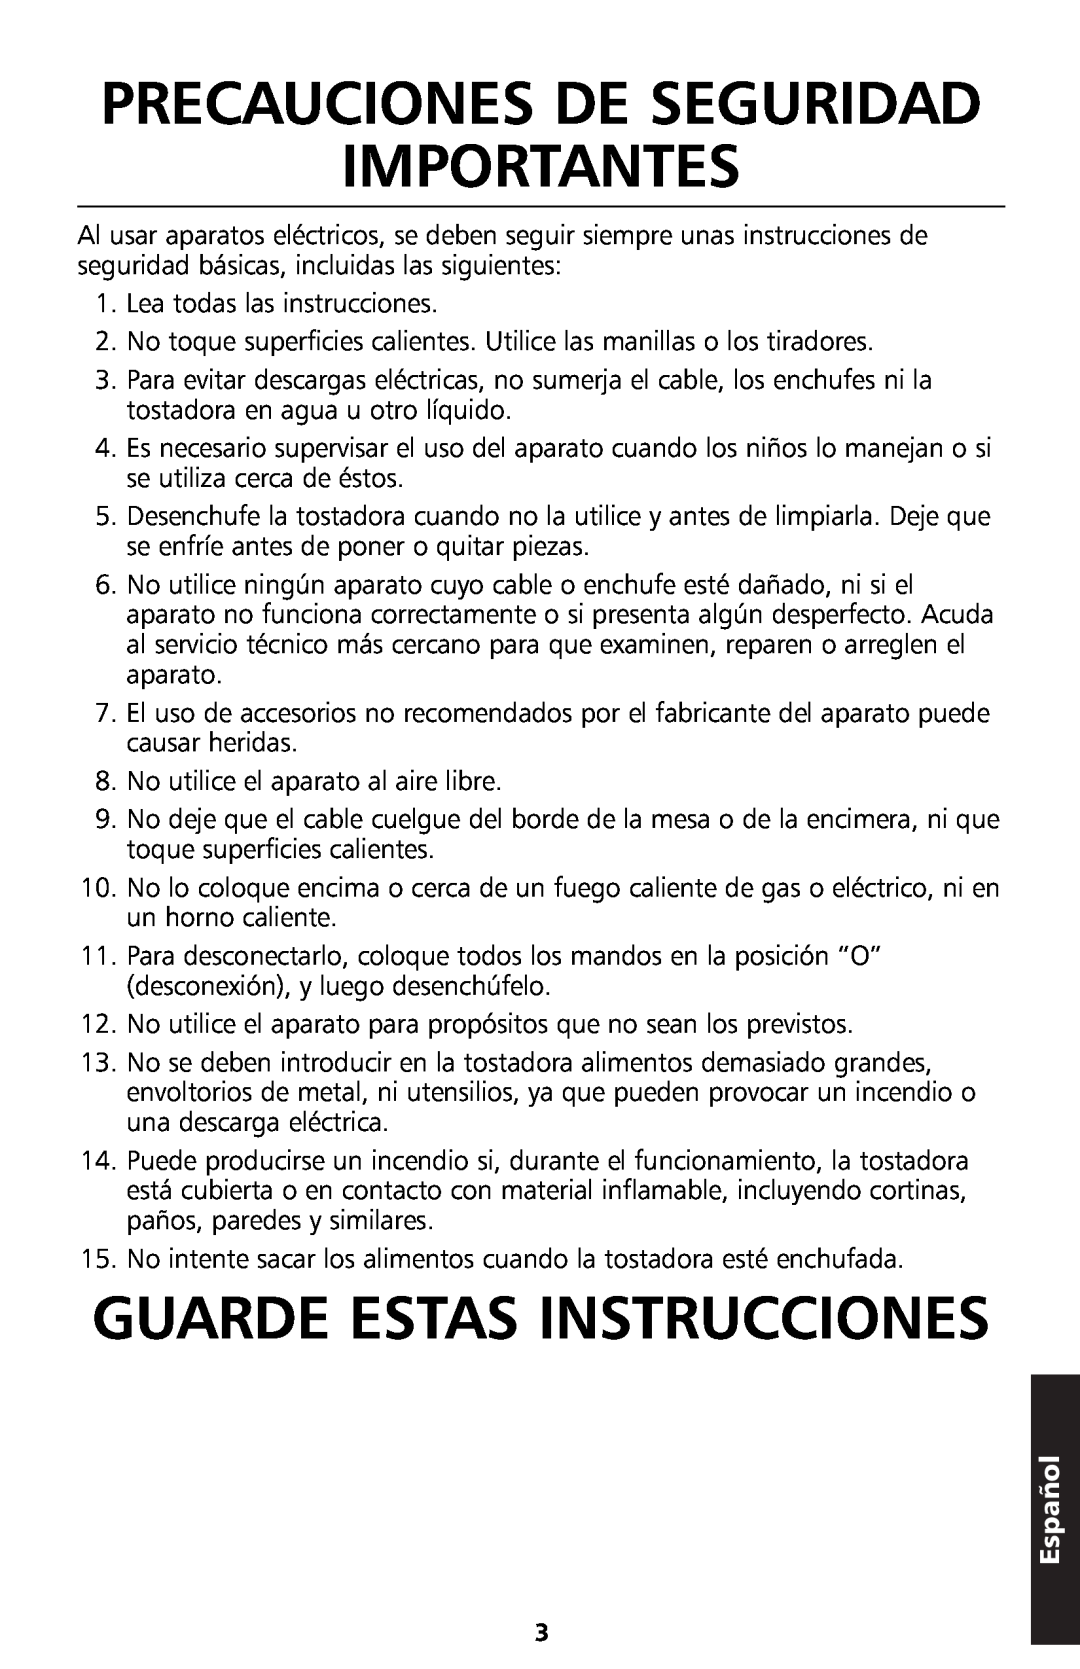 KitchenAid 5KTT890 manual Precauciones De Seguridad Importantes, Guarde Estas Instrucciones, Español 